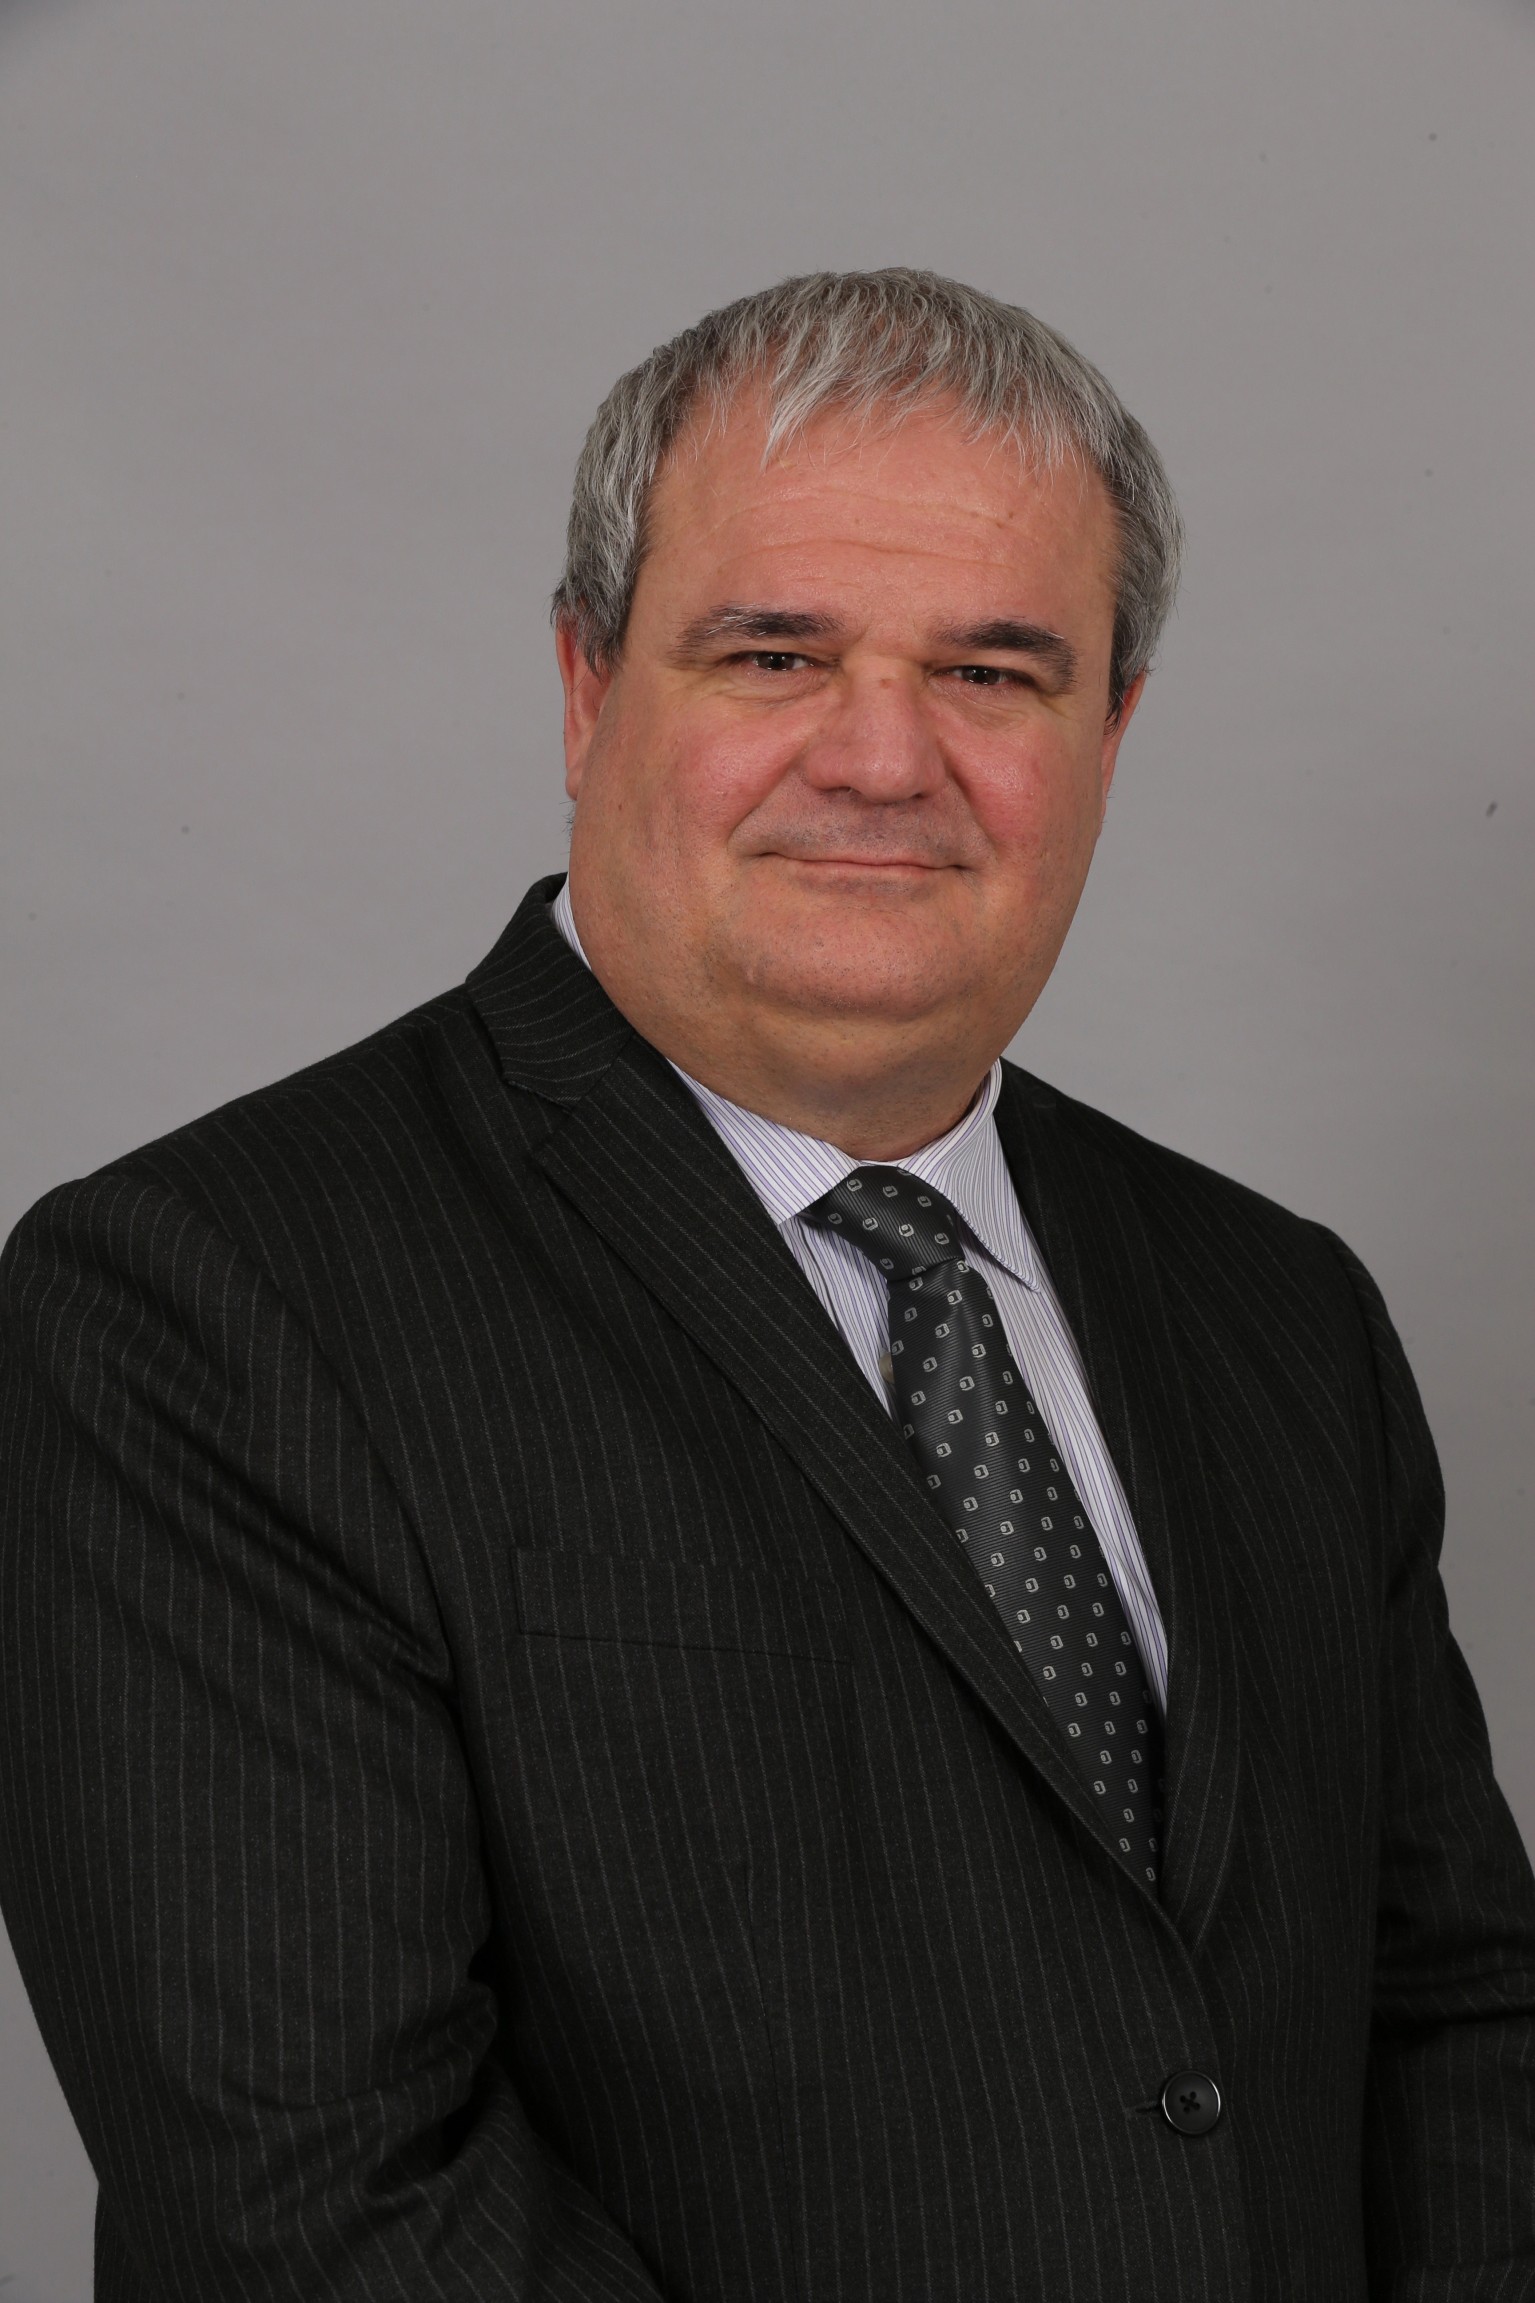 Pierre Boulet, CEO